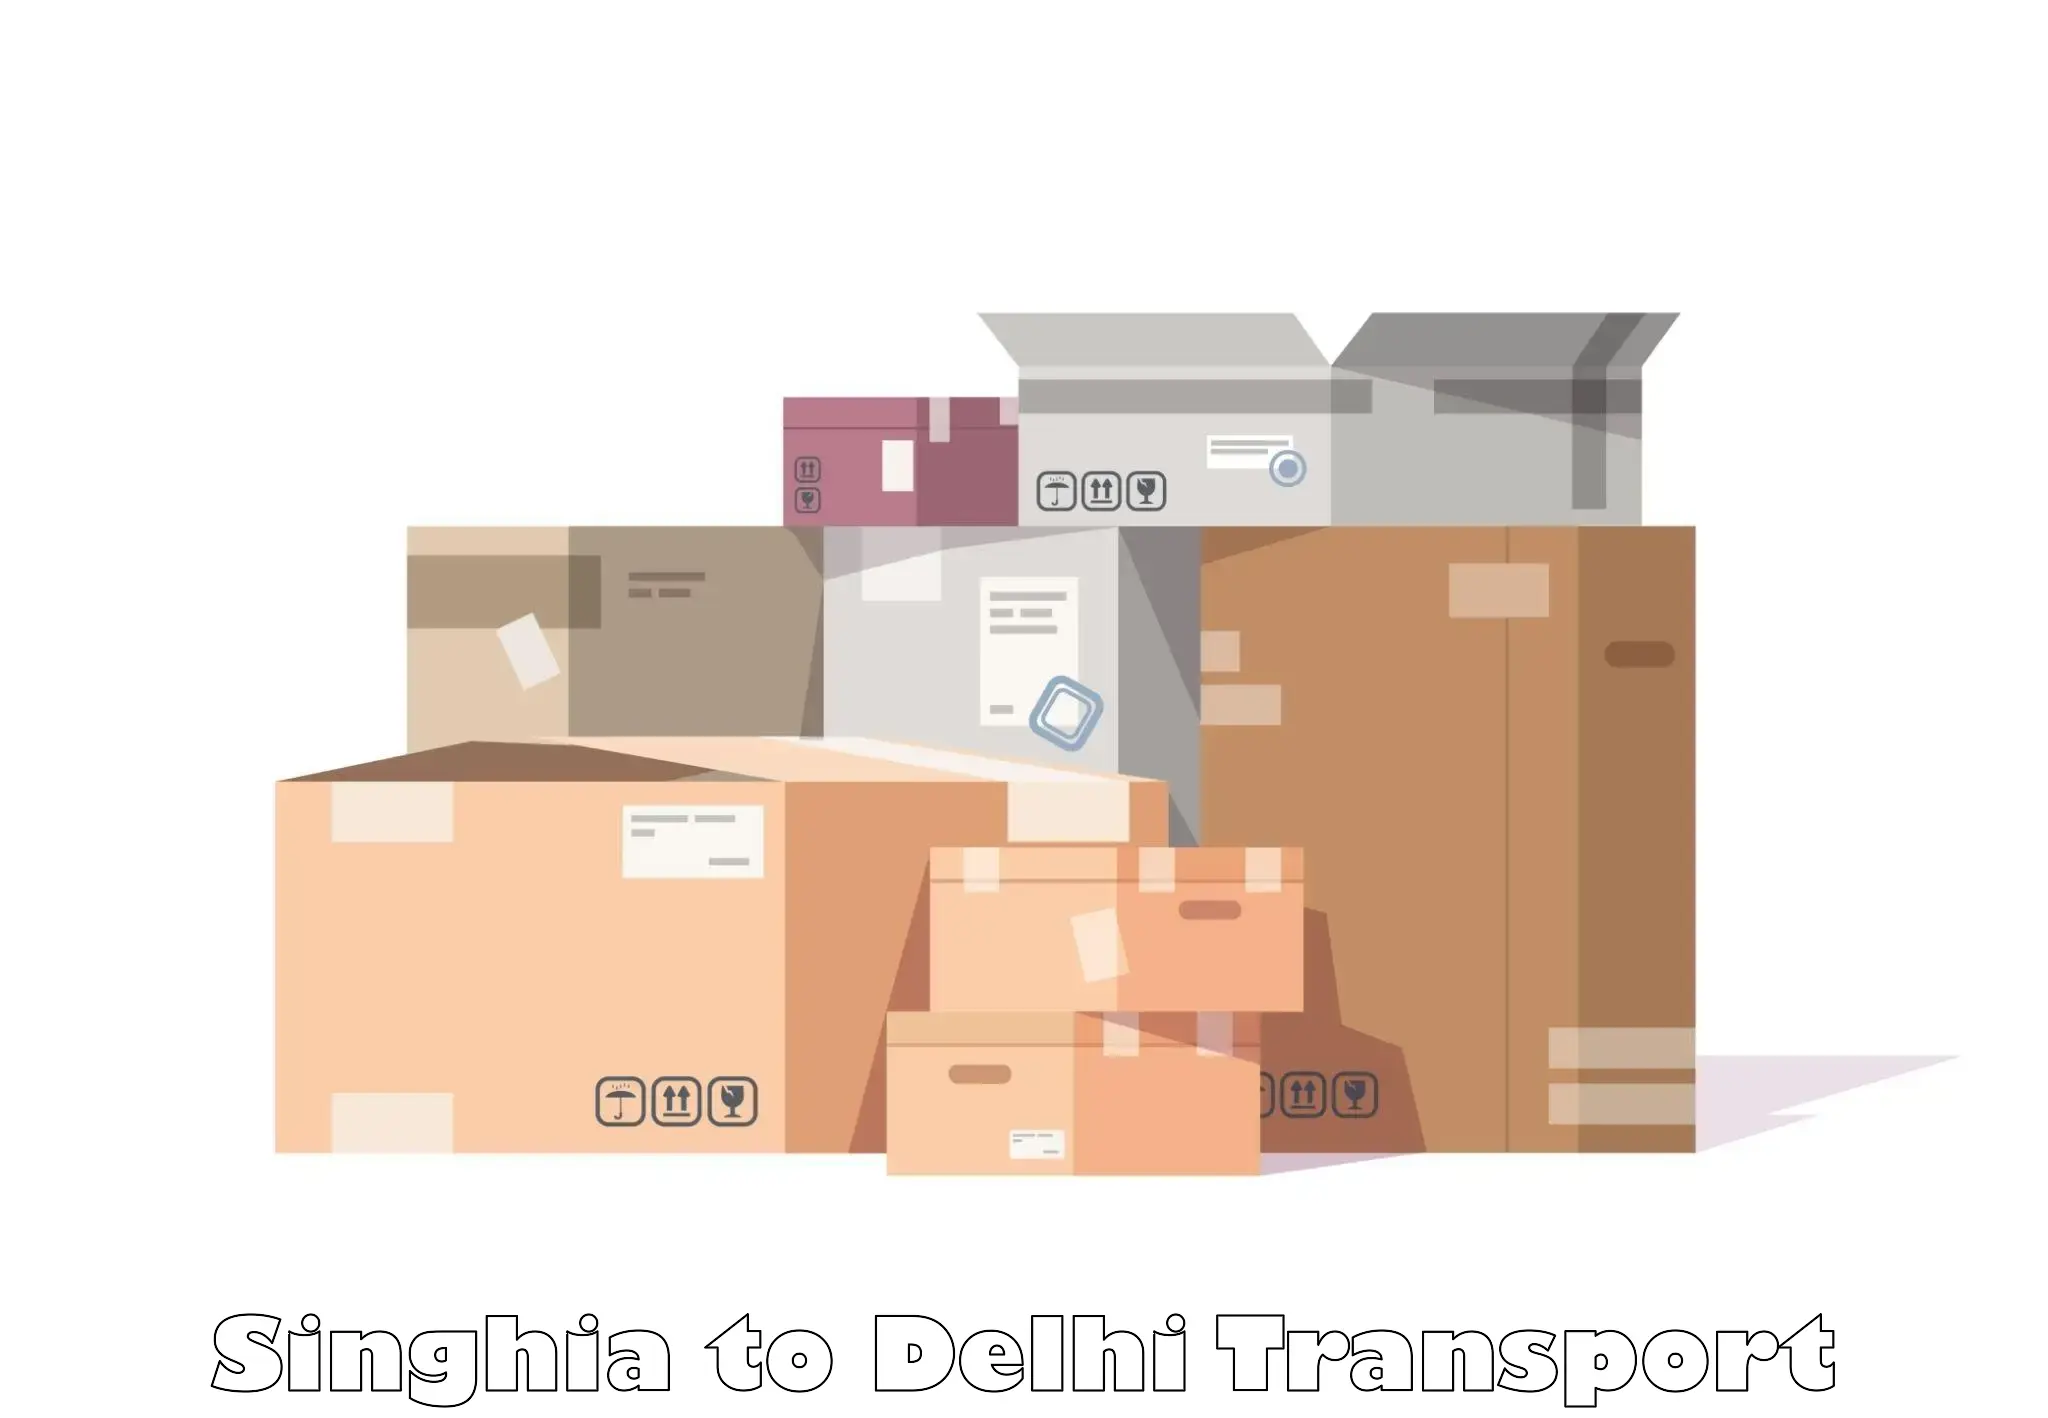 Express transport services Singhia to Jamia Millia Islamia New Delhi